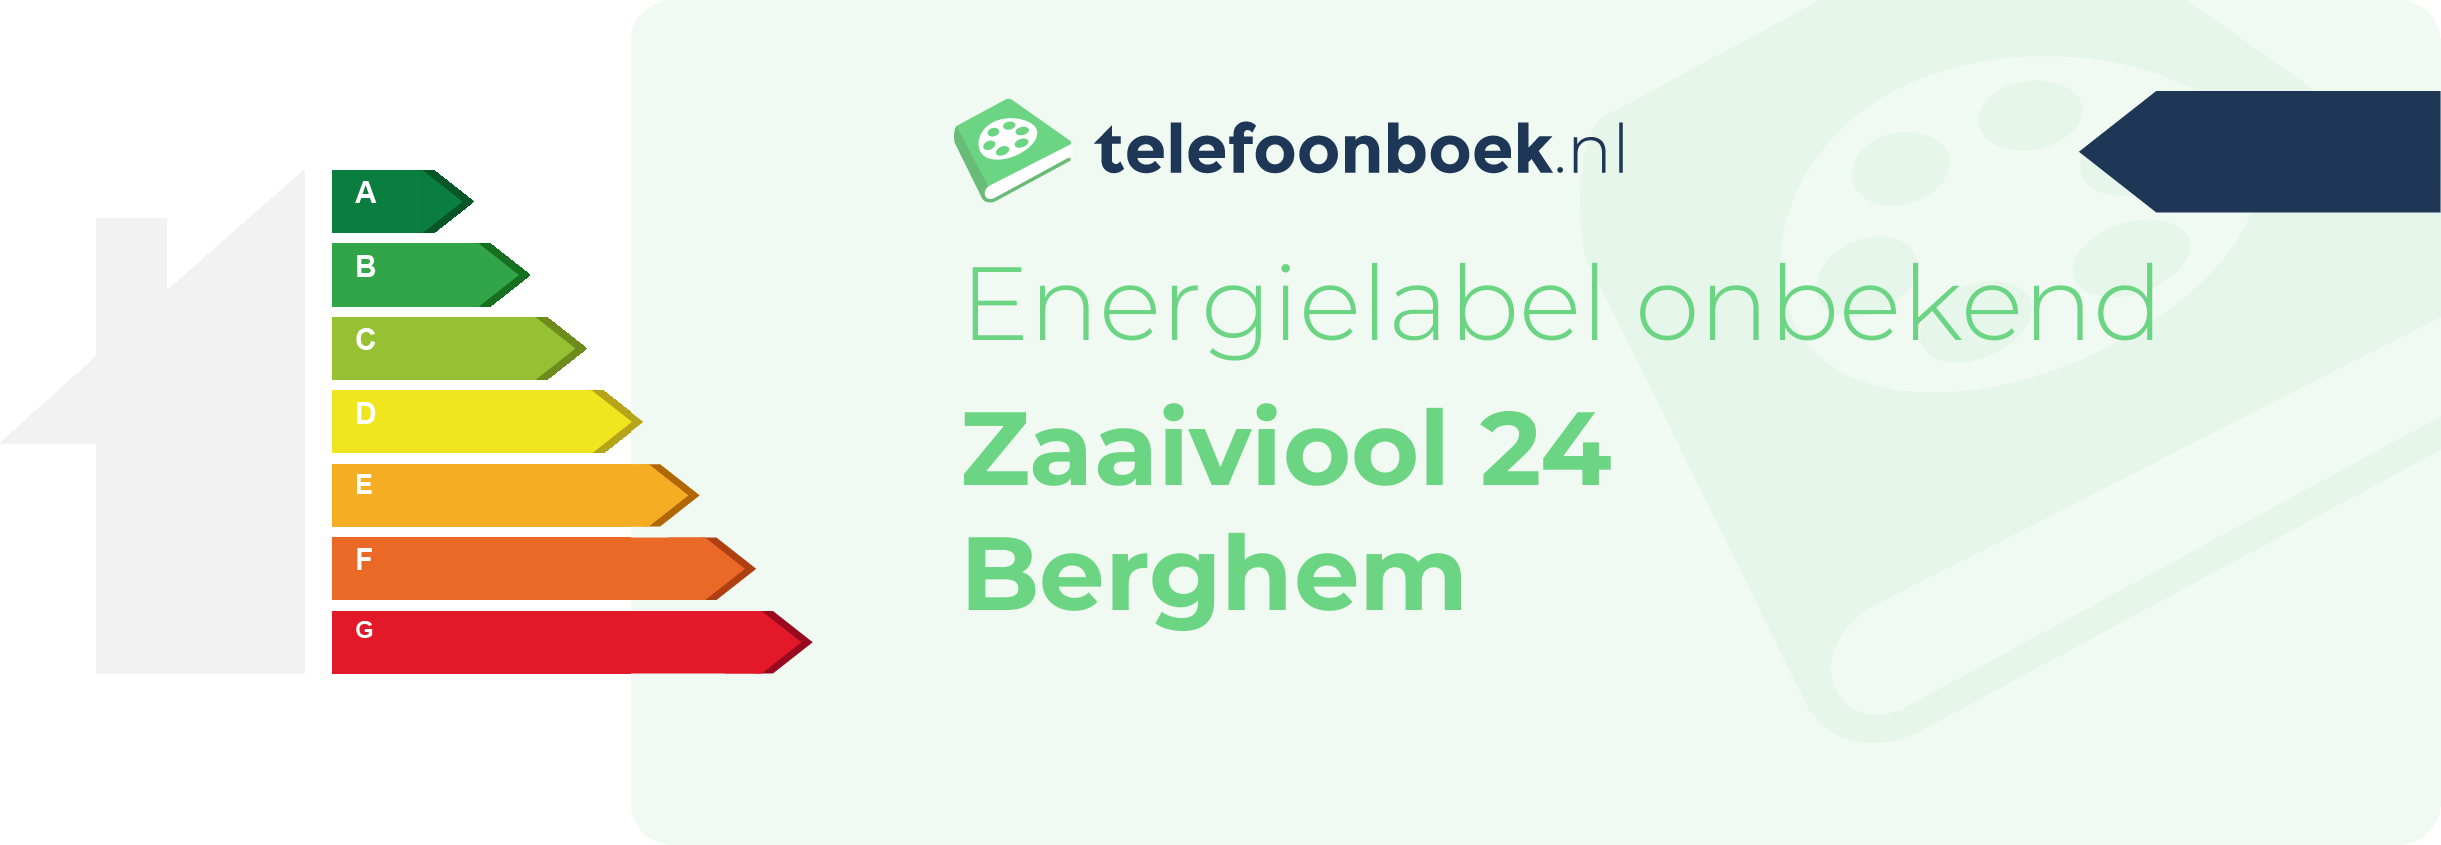 Energielabel Zaaiviool 24 Berghem